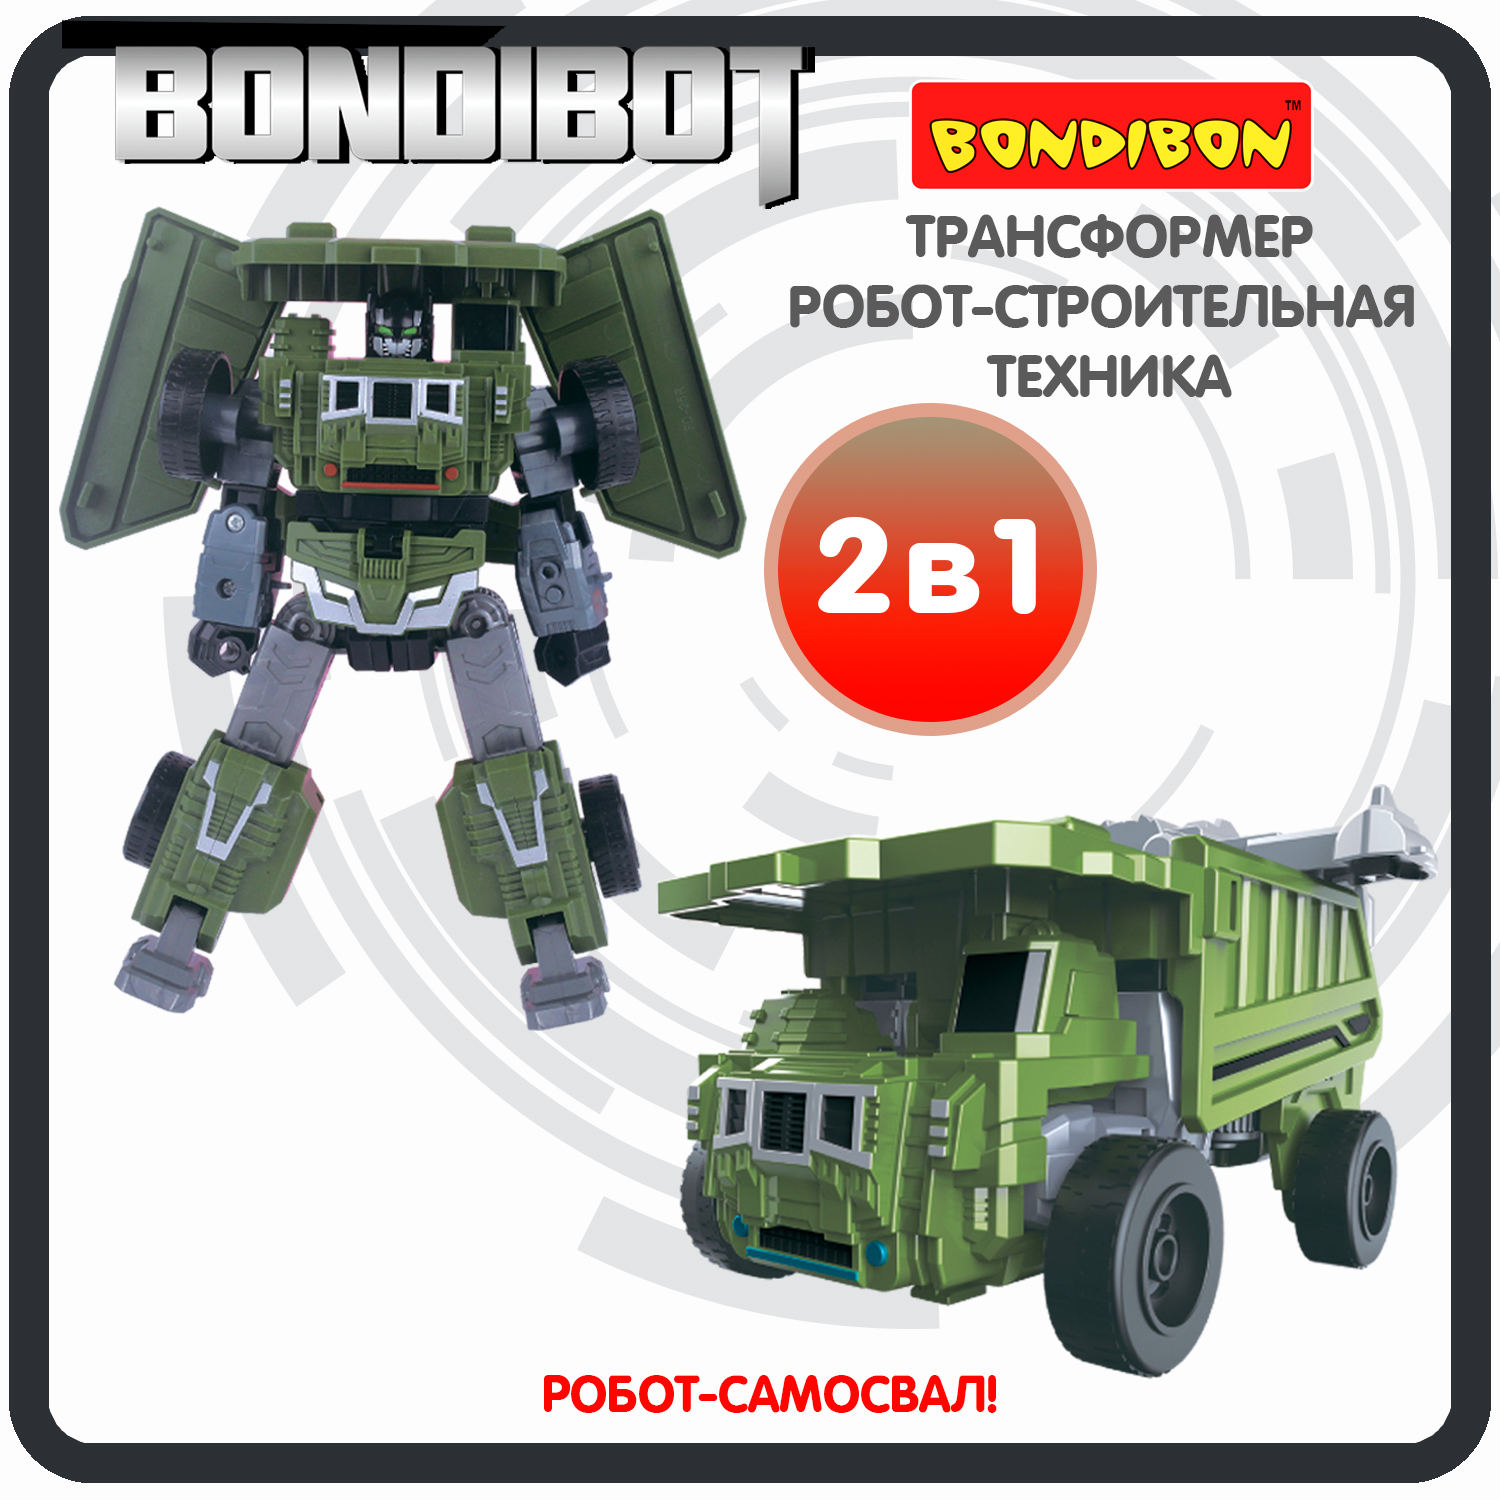 Трансформер робот-строительная техника, 2в1 BONDIBOT Bondibon, самосвал / ВВ6052